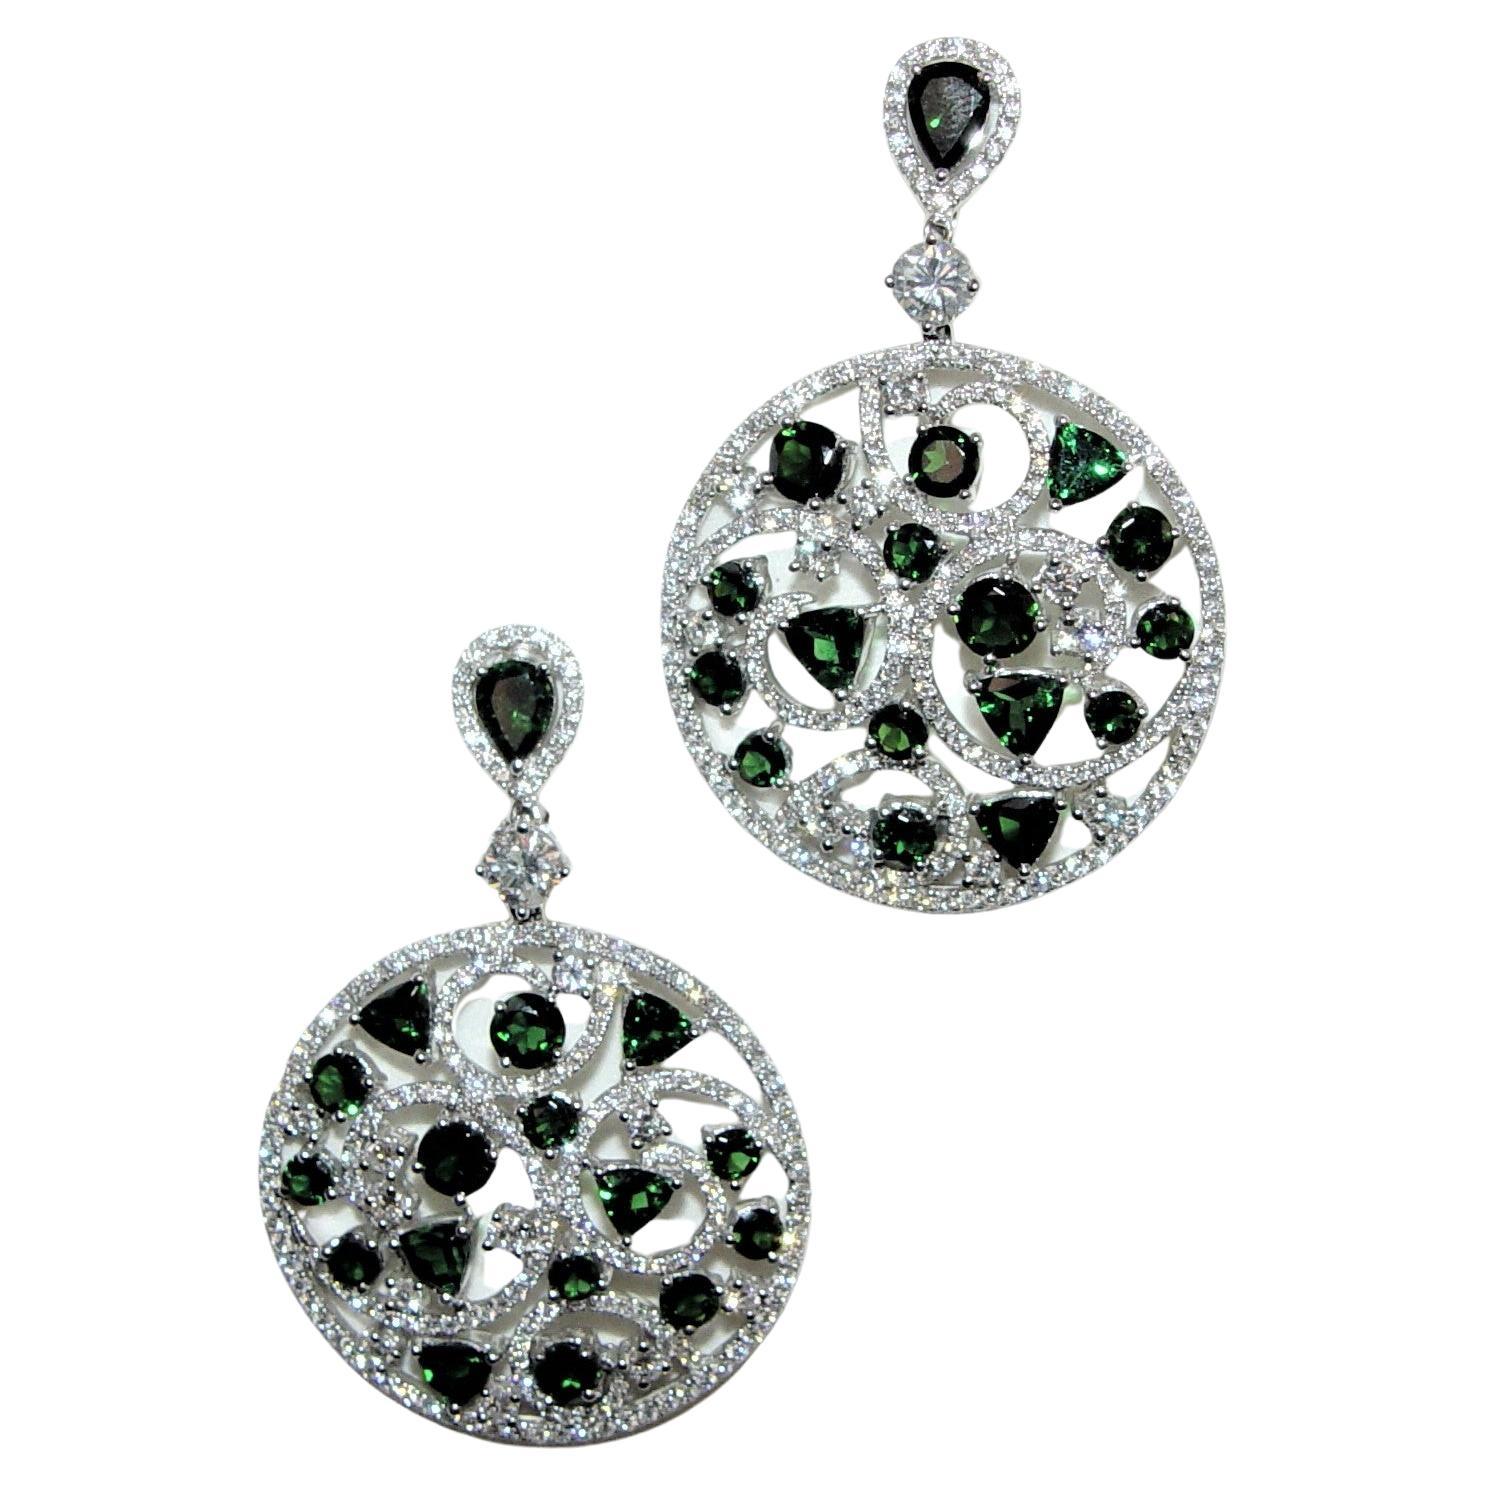 Boucles d'oreilles chandelier en tourmaline verte 11,64 carats et diamants 18 carats 55 mm